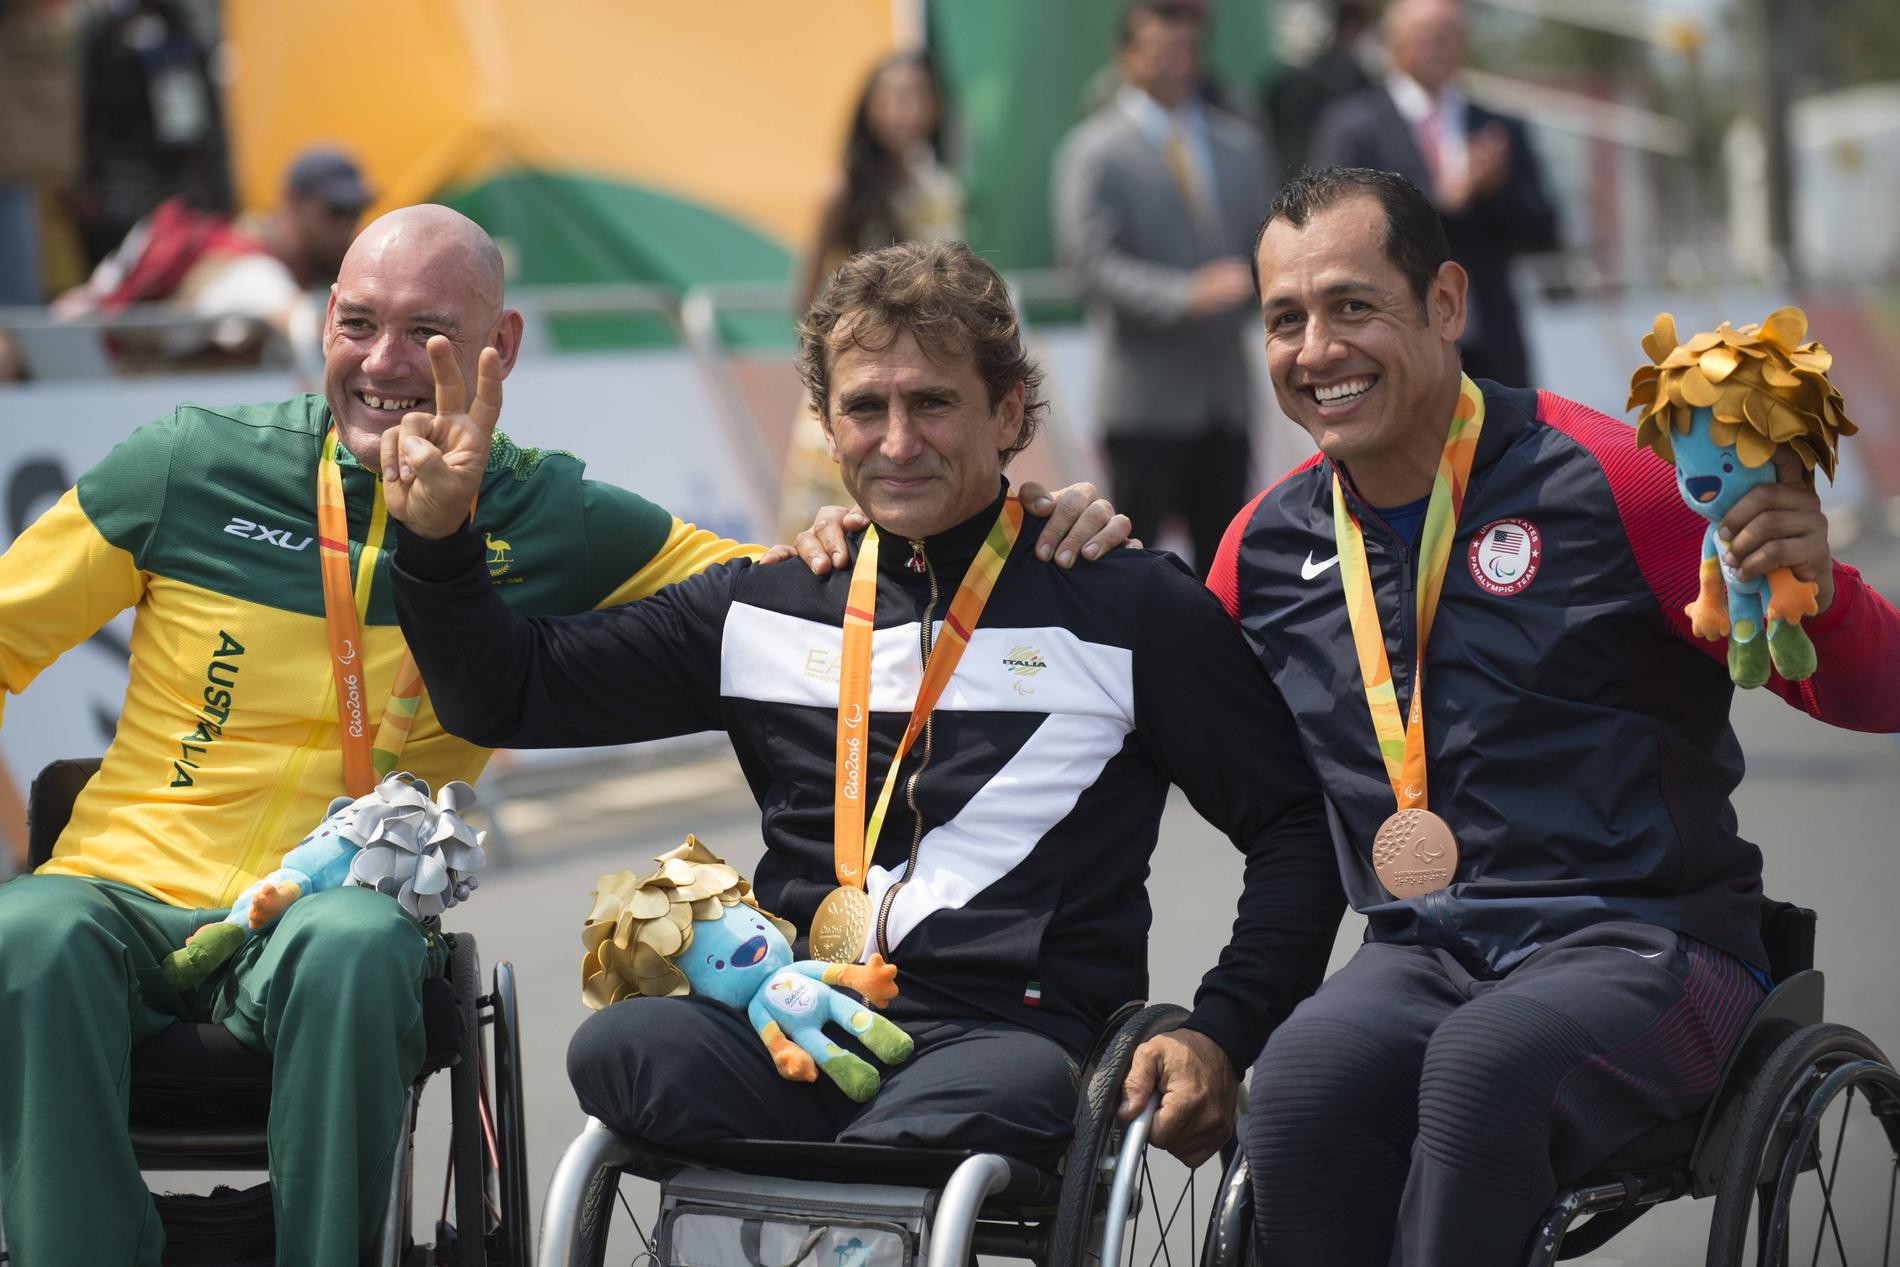 Alex Zanardi med guldmedaljen från Paralympics i Rio